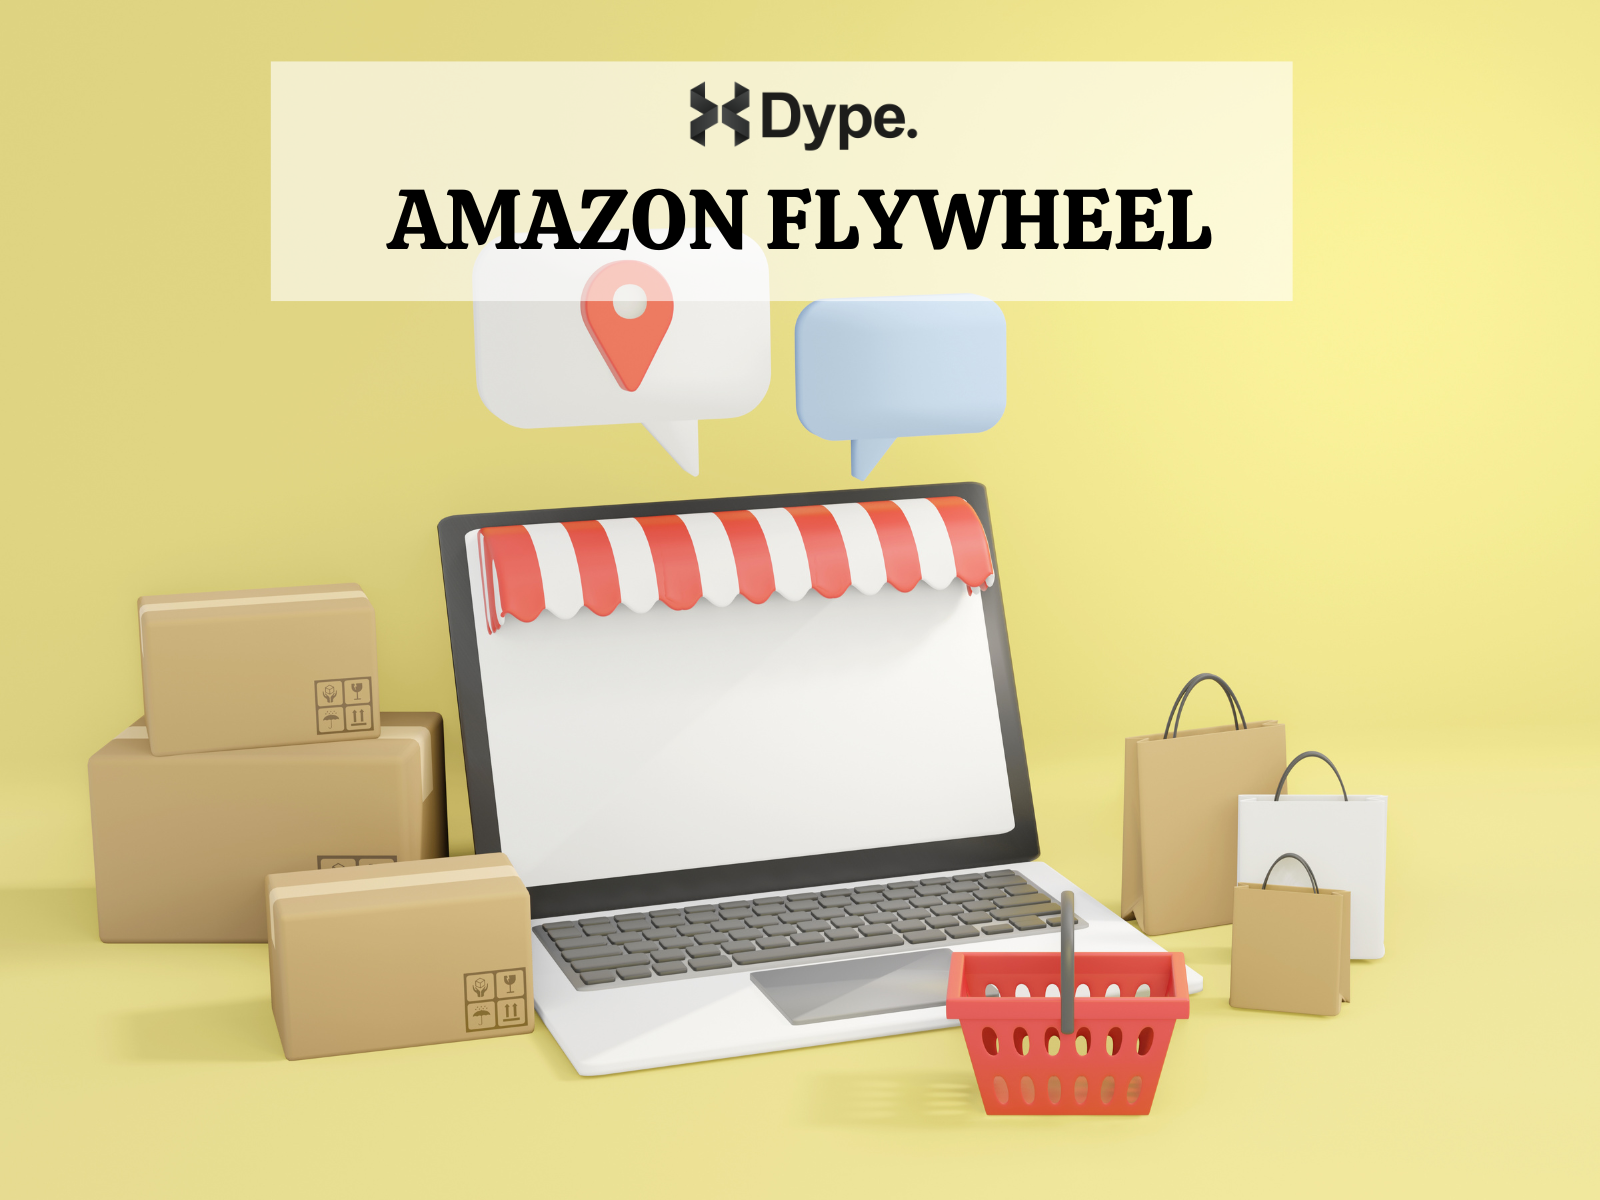 Amazon Flywheel